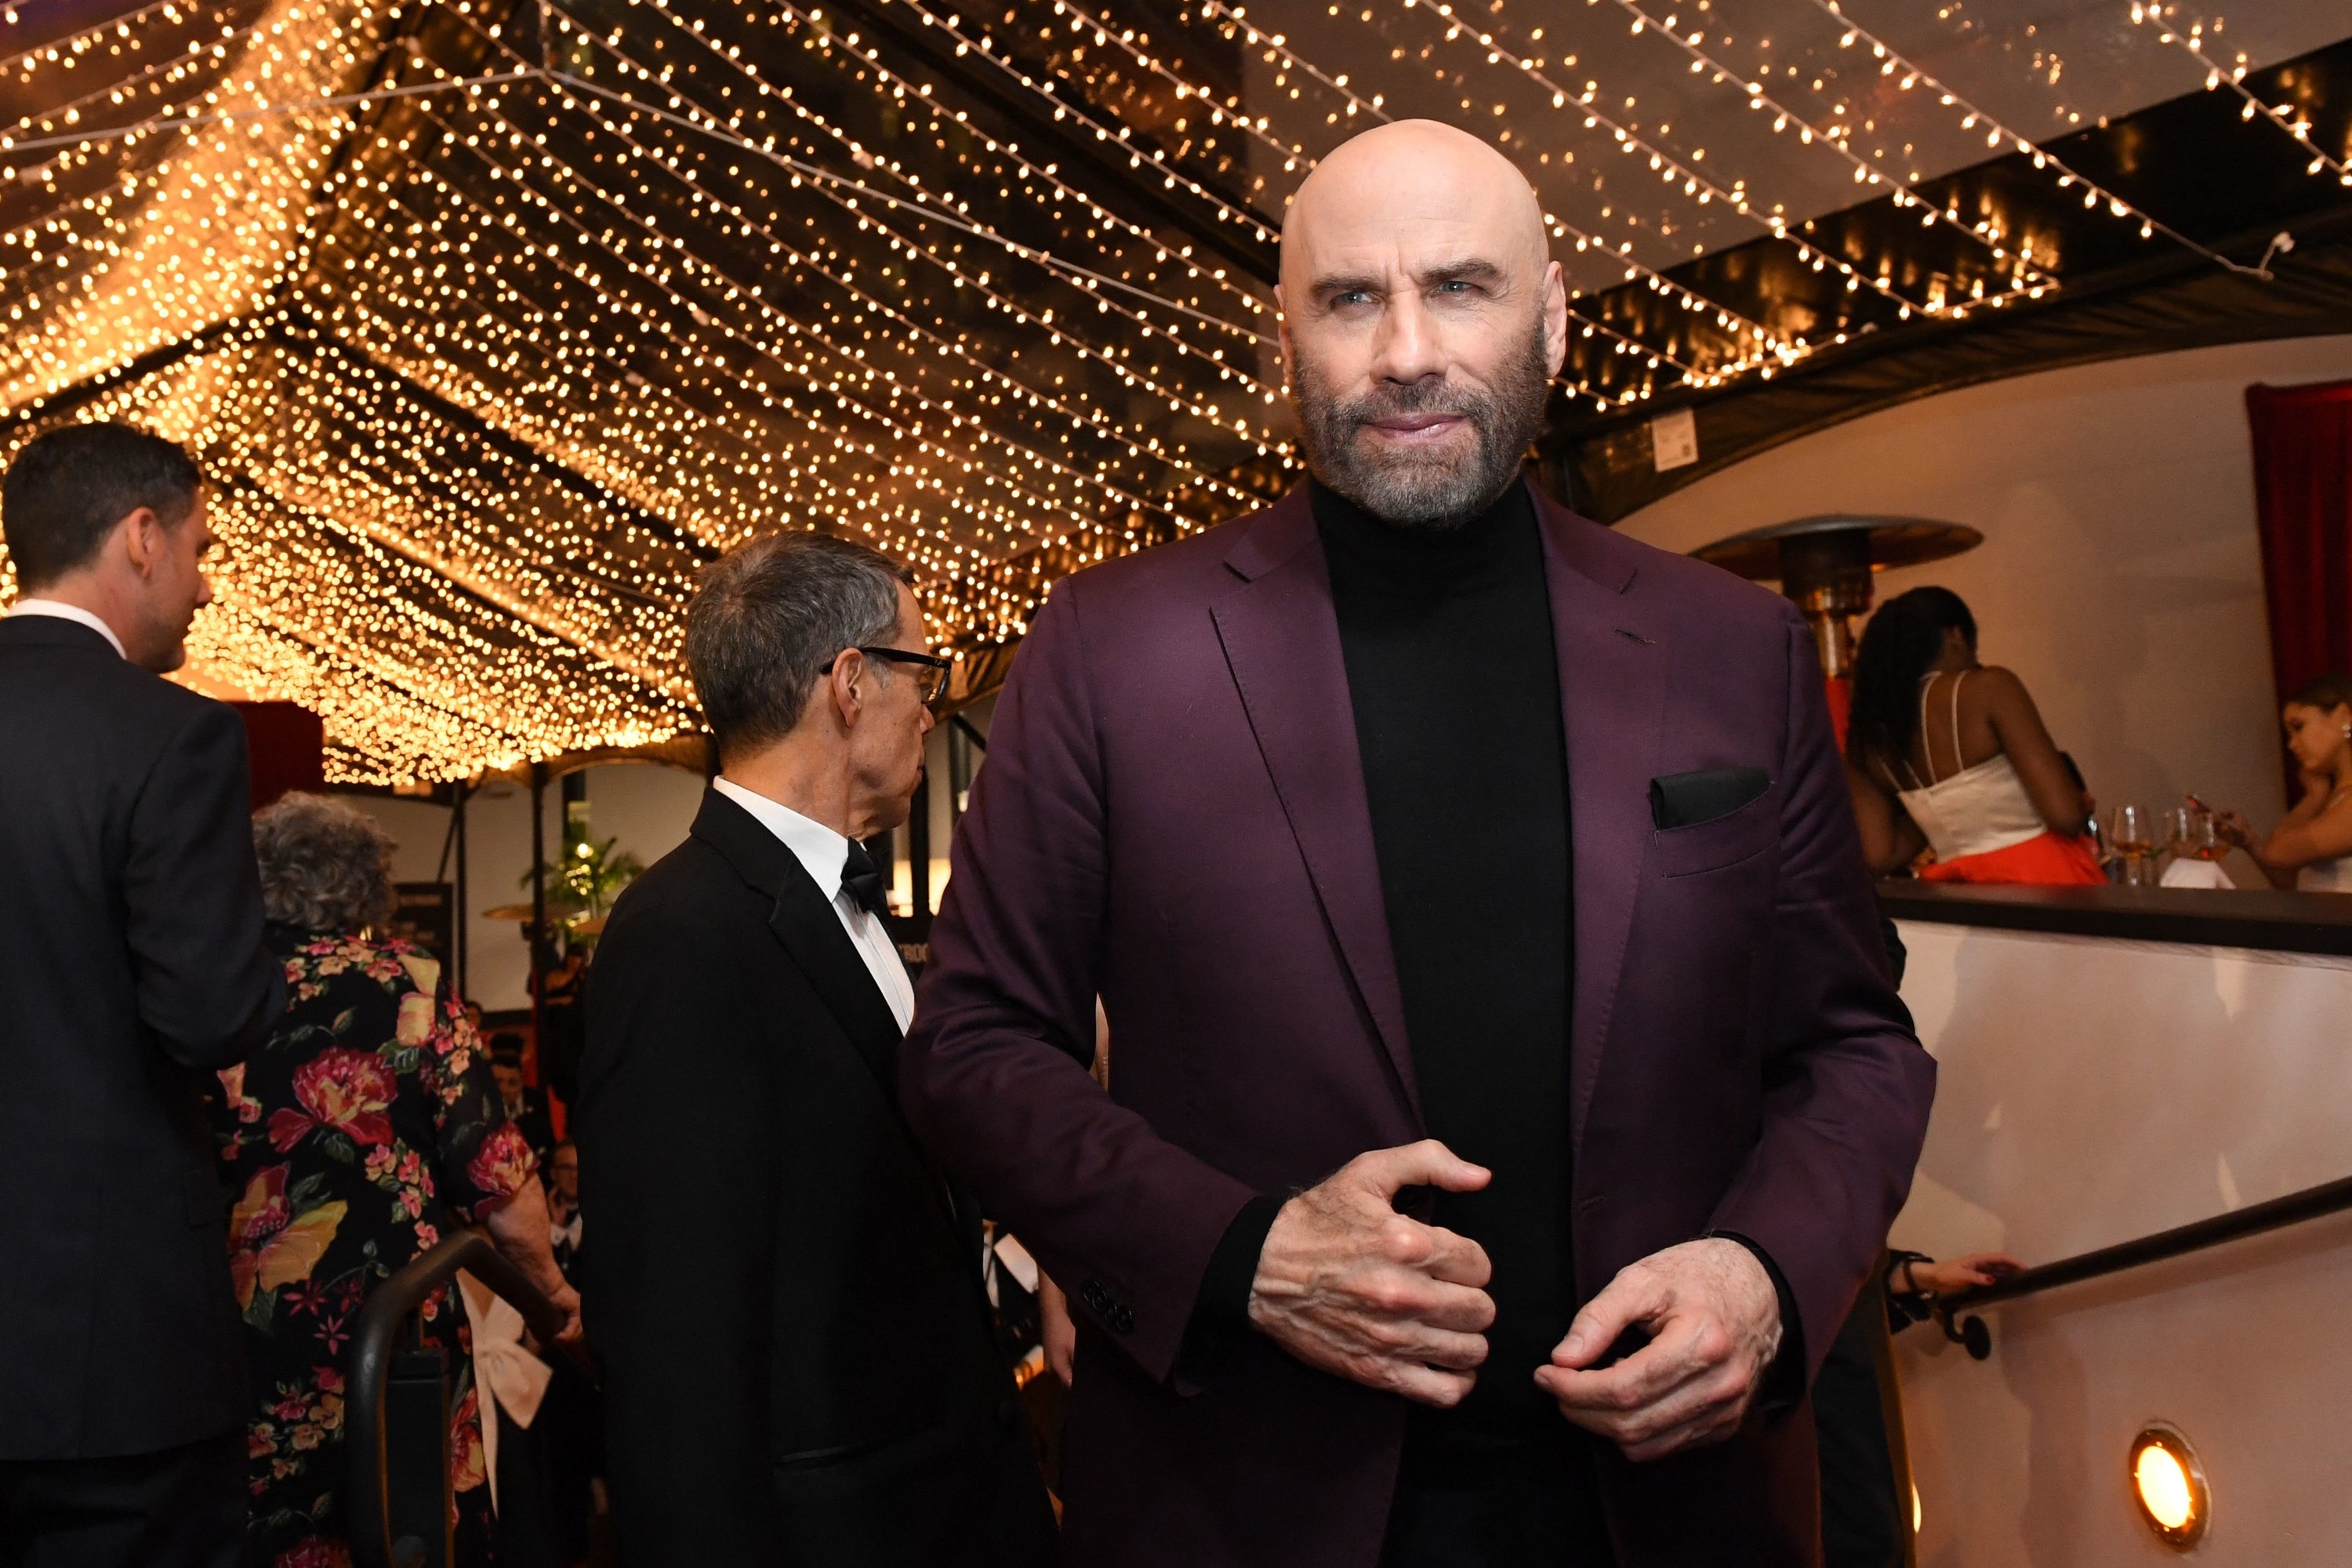 Travolta at a formal event